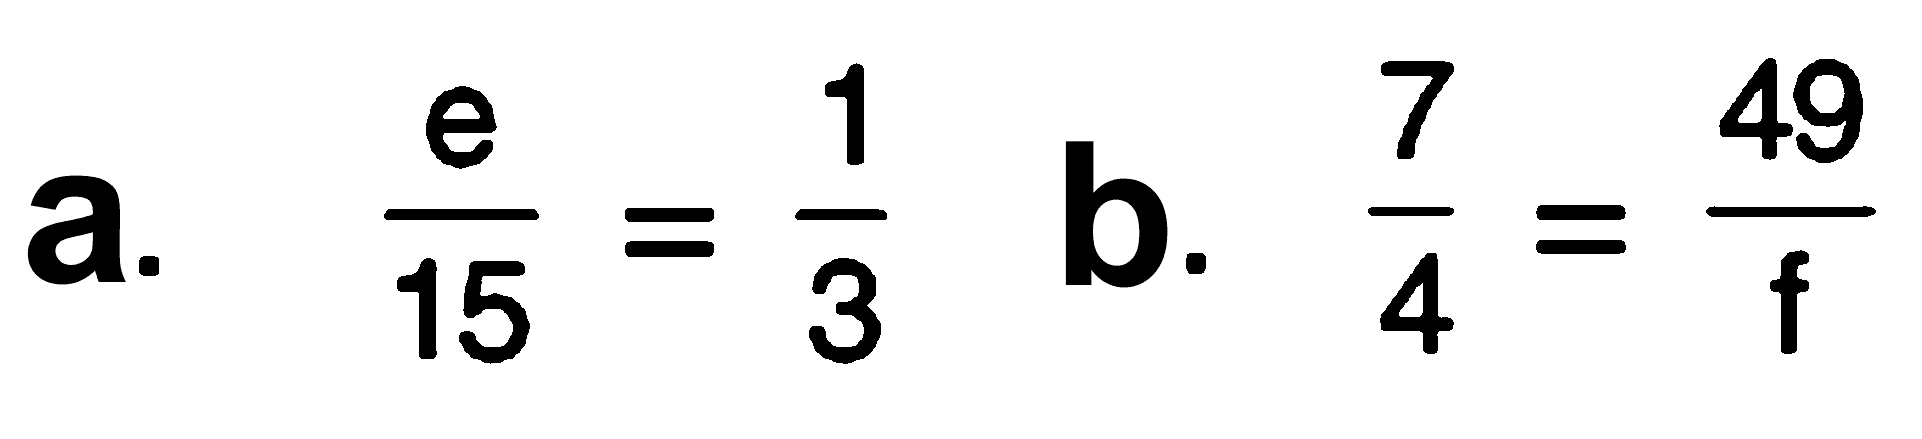 a. e/15 = 1/3 b. 7/4 = 49/f